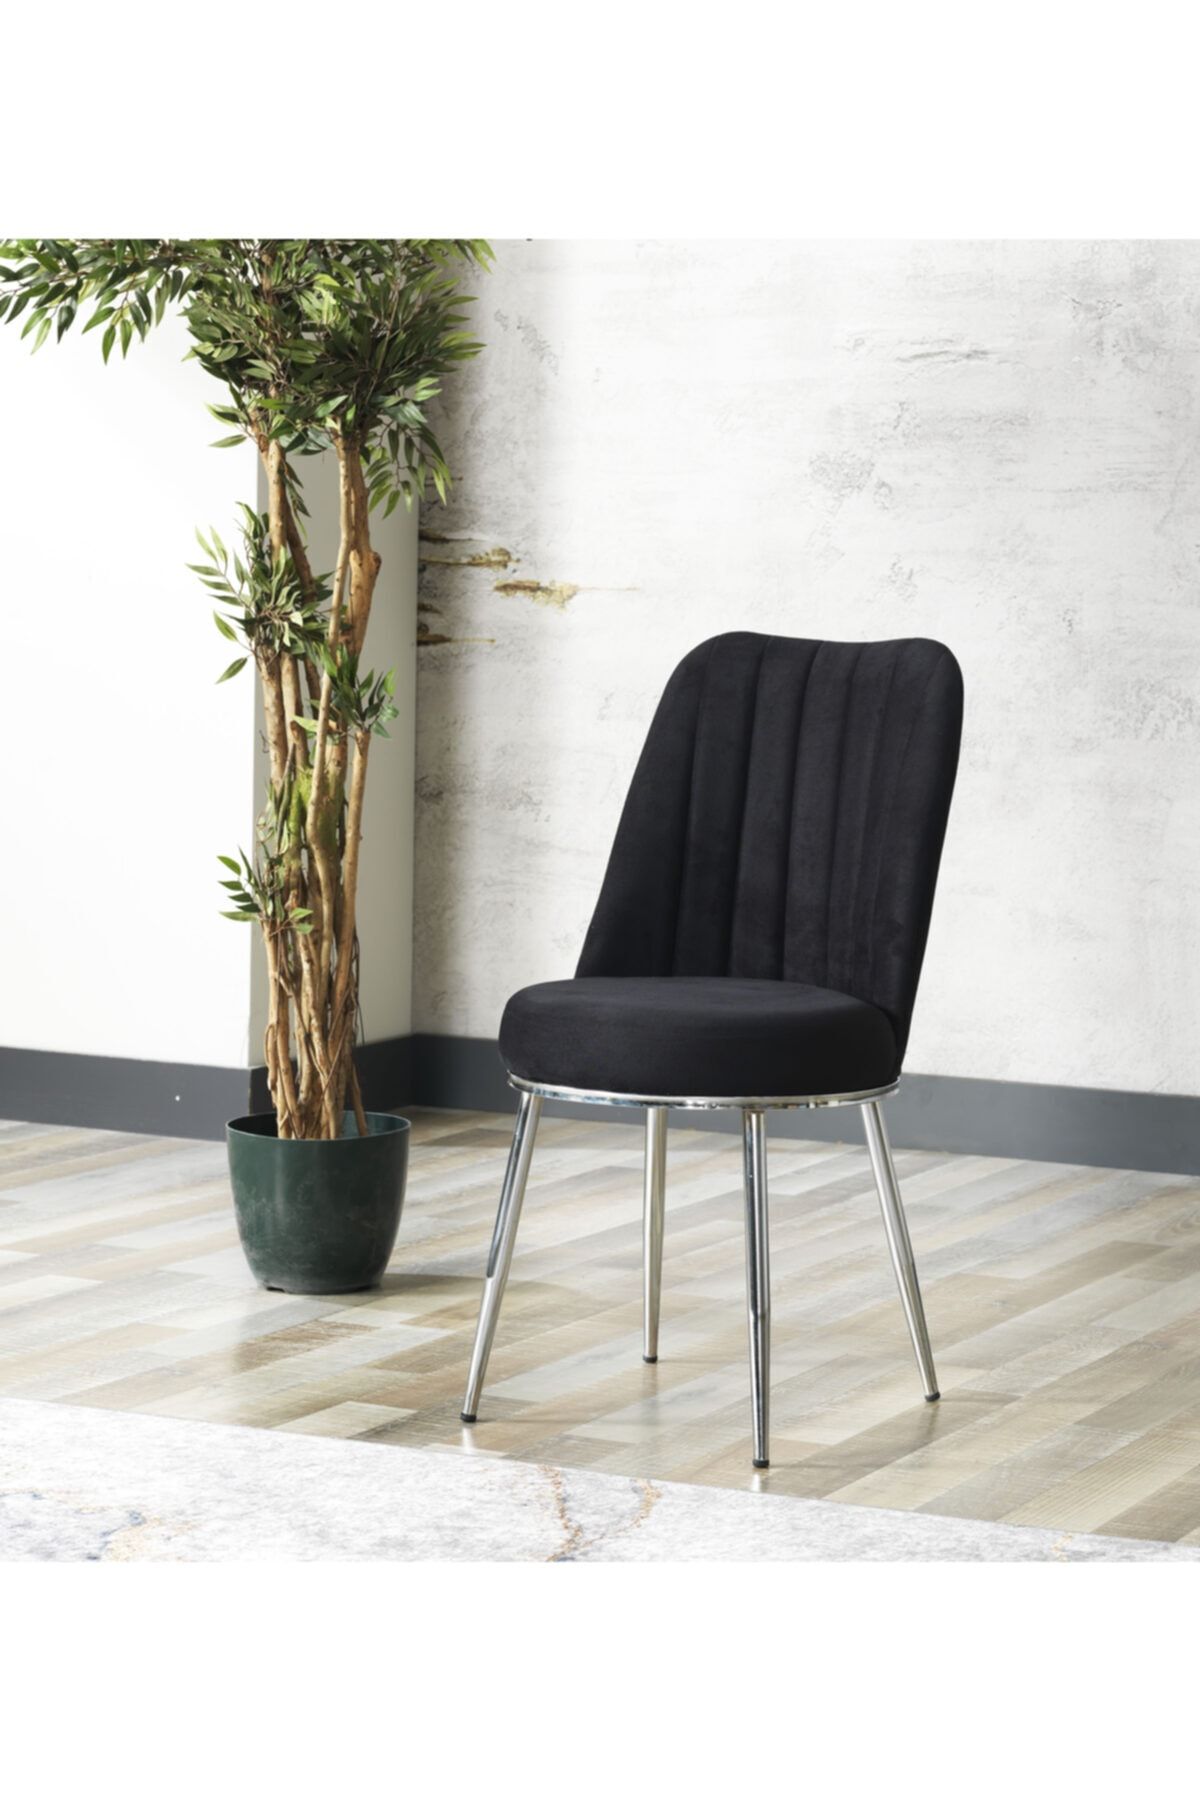 Avvio Gold Sandalye- Yemek Masası Sandalyesi - Mutfak Masası Sandalyesi Siyah Renk- Metal Krom Ayak